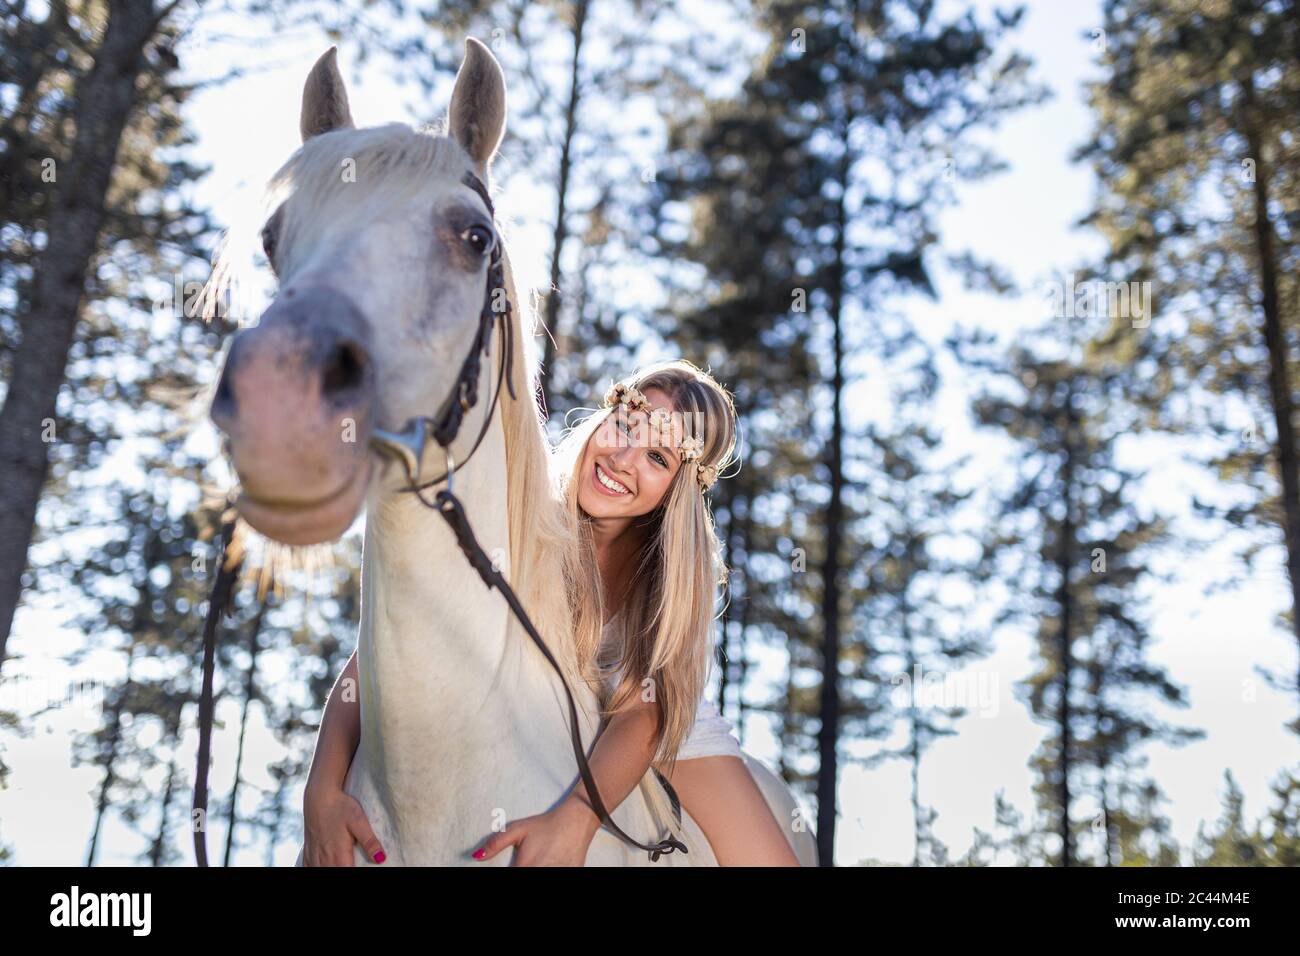 Vue en angle bas de la jeune femme souriante penchée sur un cheval blanc dans la forêt Banque D'Images